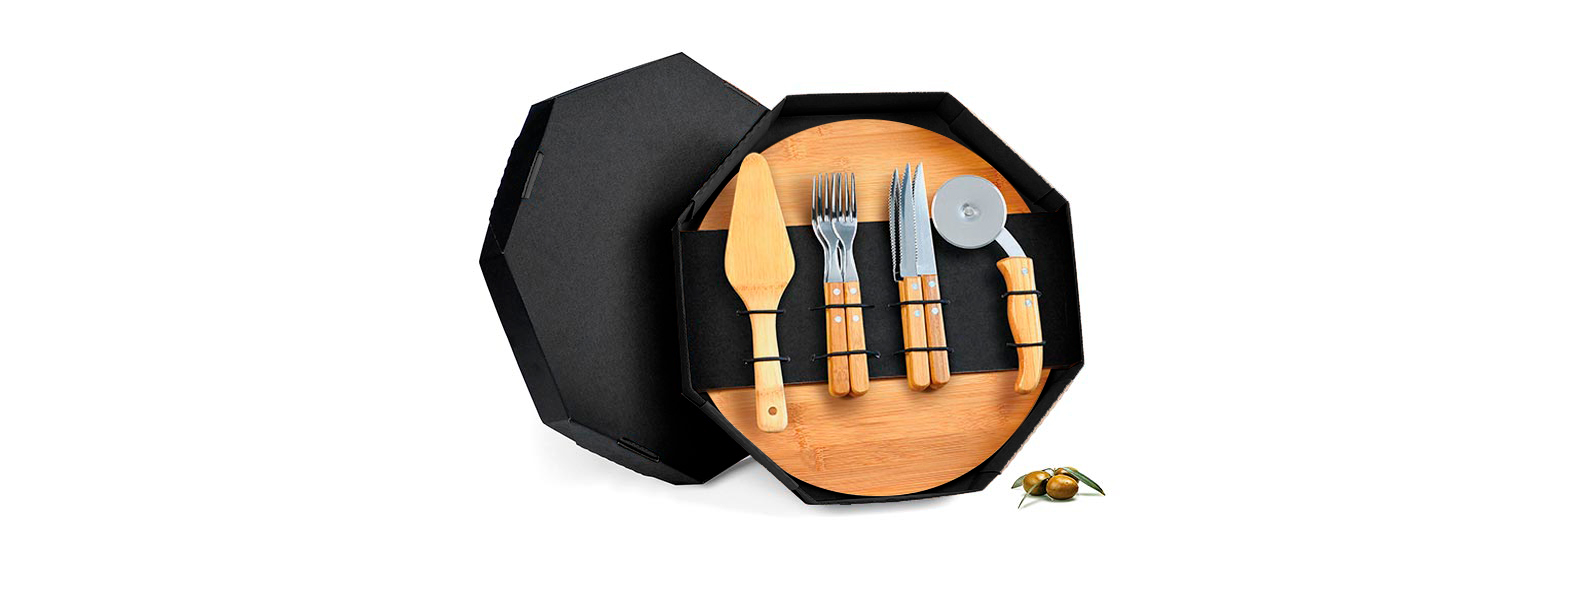 Conjunto para pizza em bambu/Aço Inox; Acompanha tábua e espátula em bambu; Quatro facas de mesa, quatro garfos de mesa e cortador de pizza em bambu/Inox. Embalagem ideal para presentear.